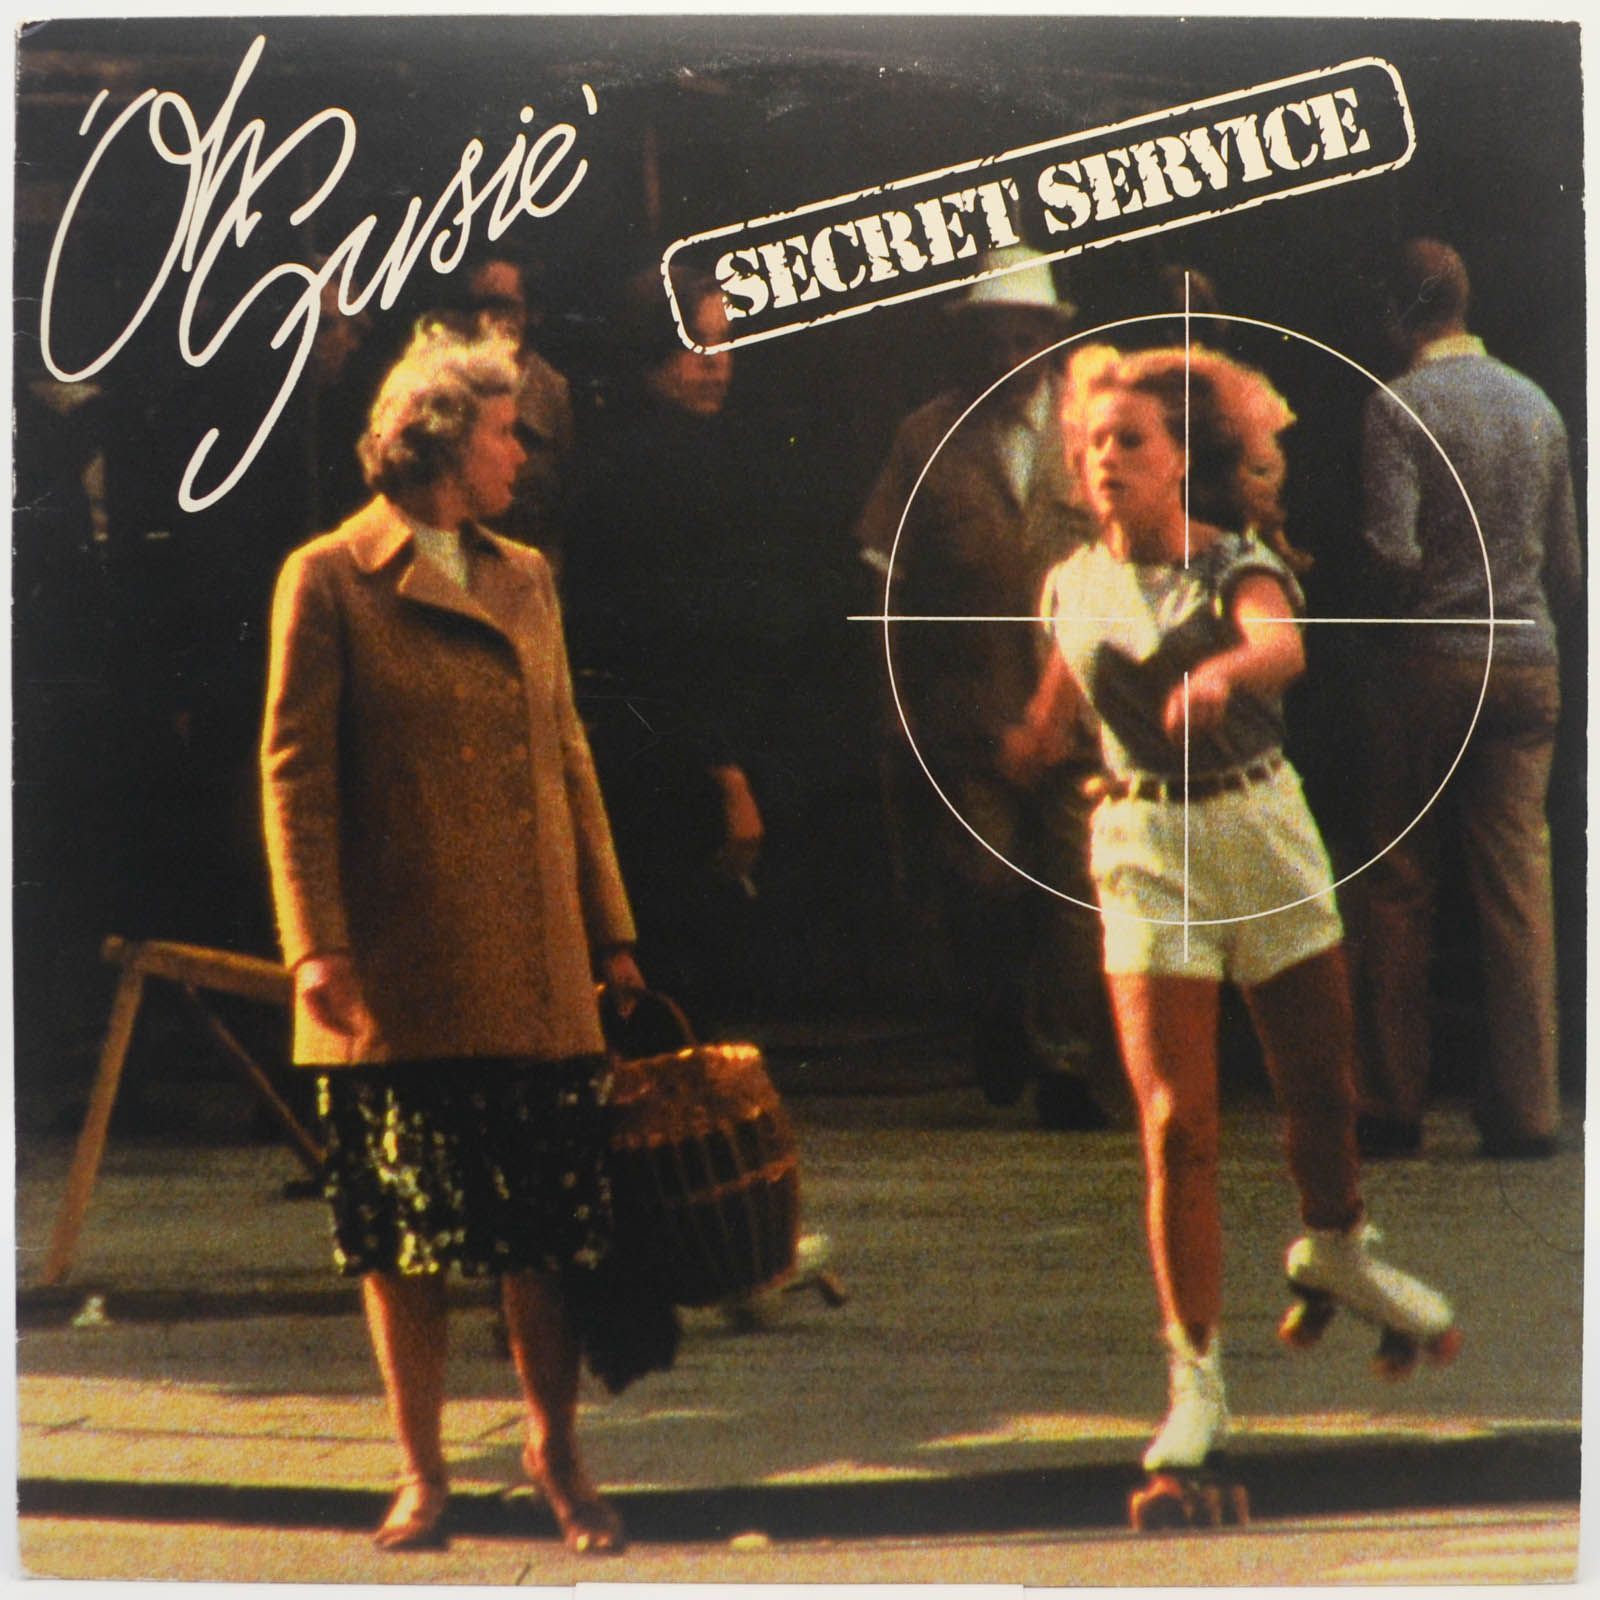 Secret Service — Oh Susie (1-st, Sweden), 1979